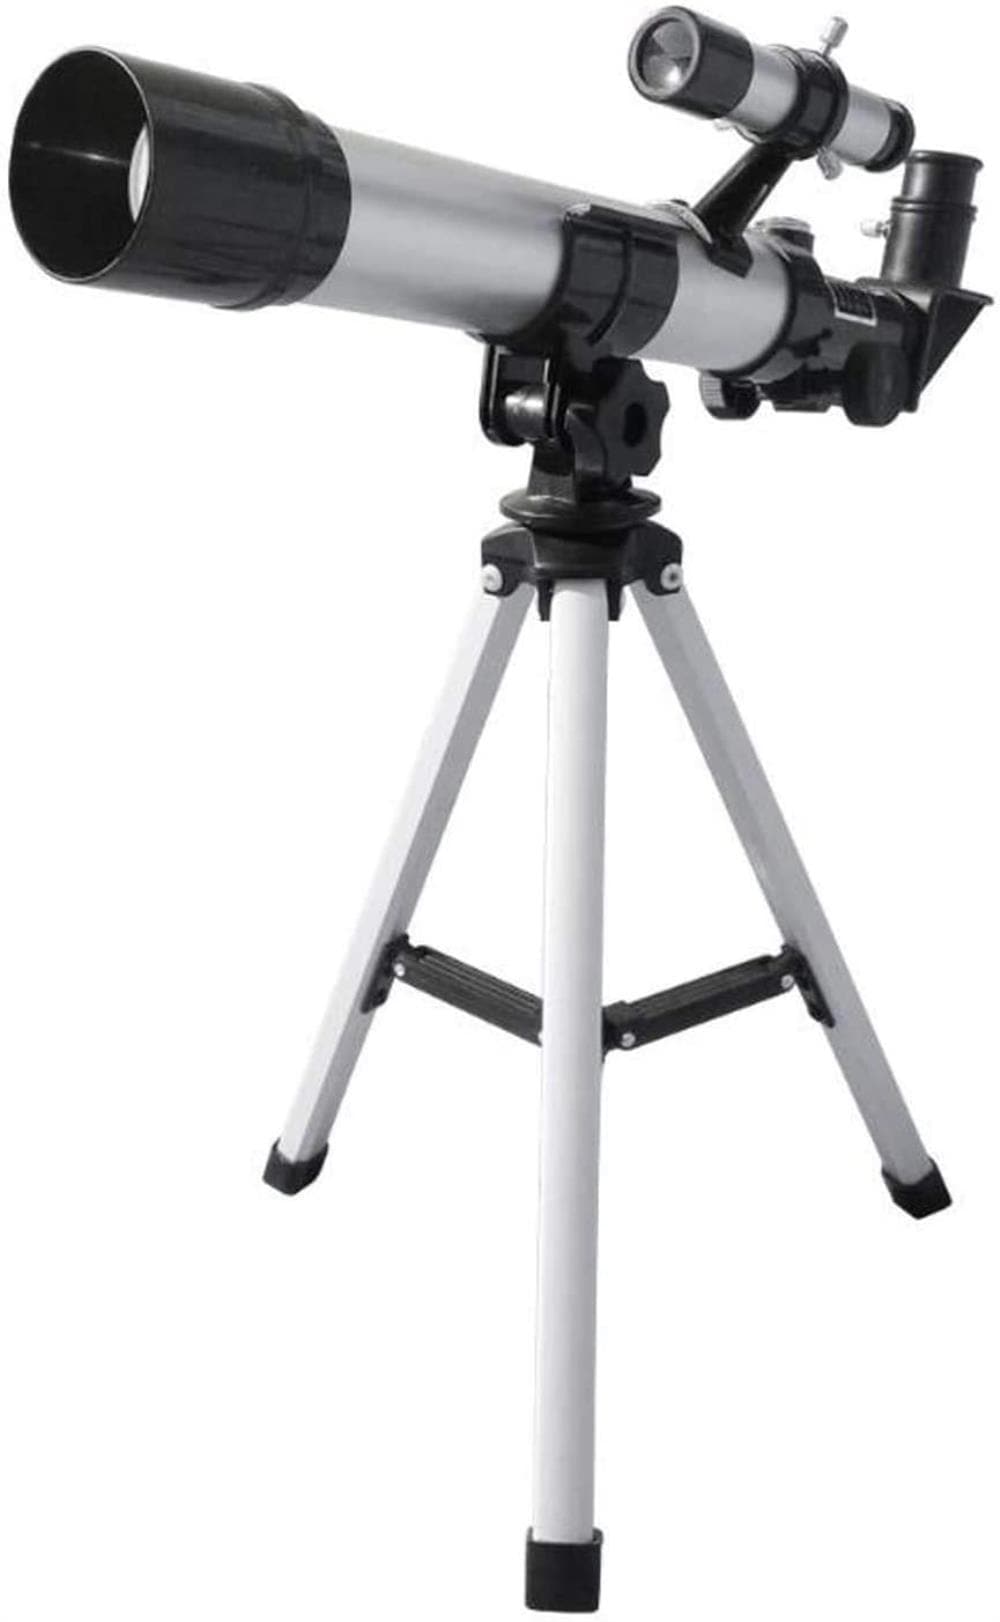 初心者のための望遠鏡子供光学システム屈折... : カメラ 好評在庫